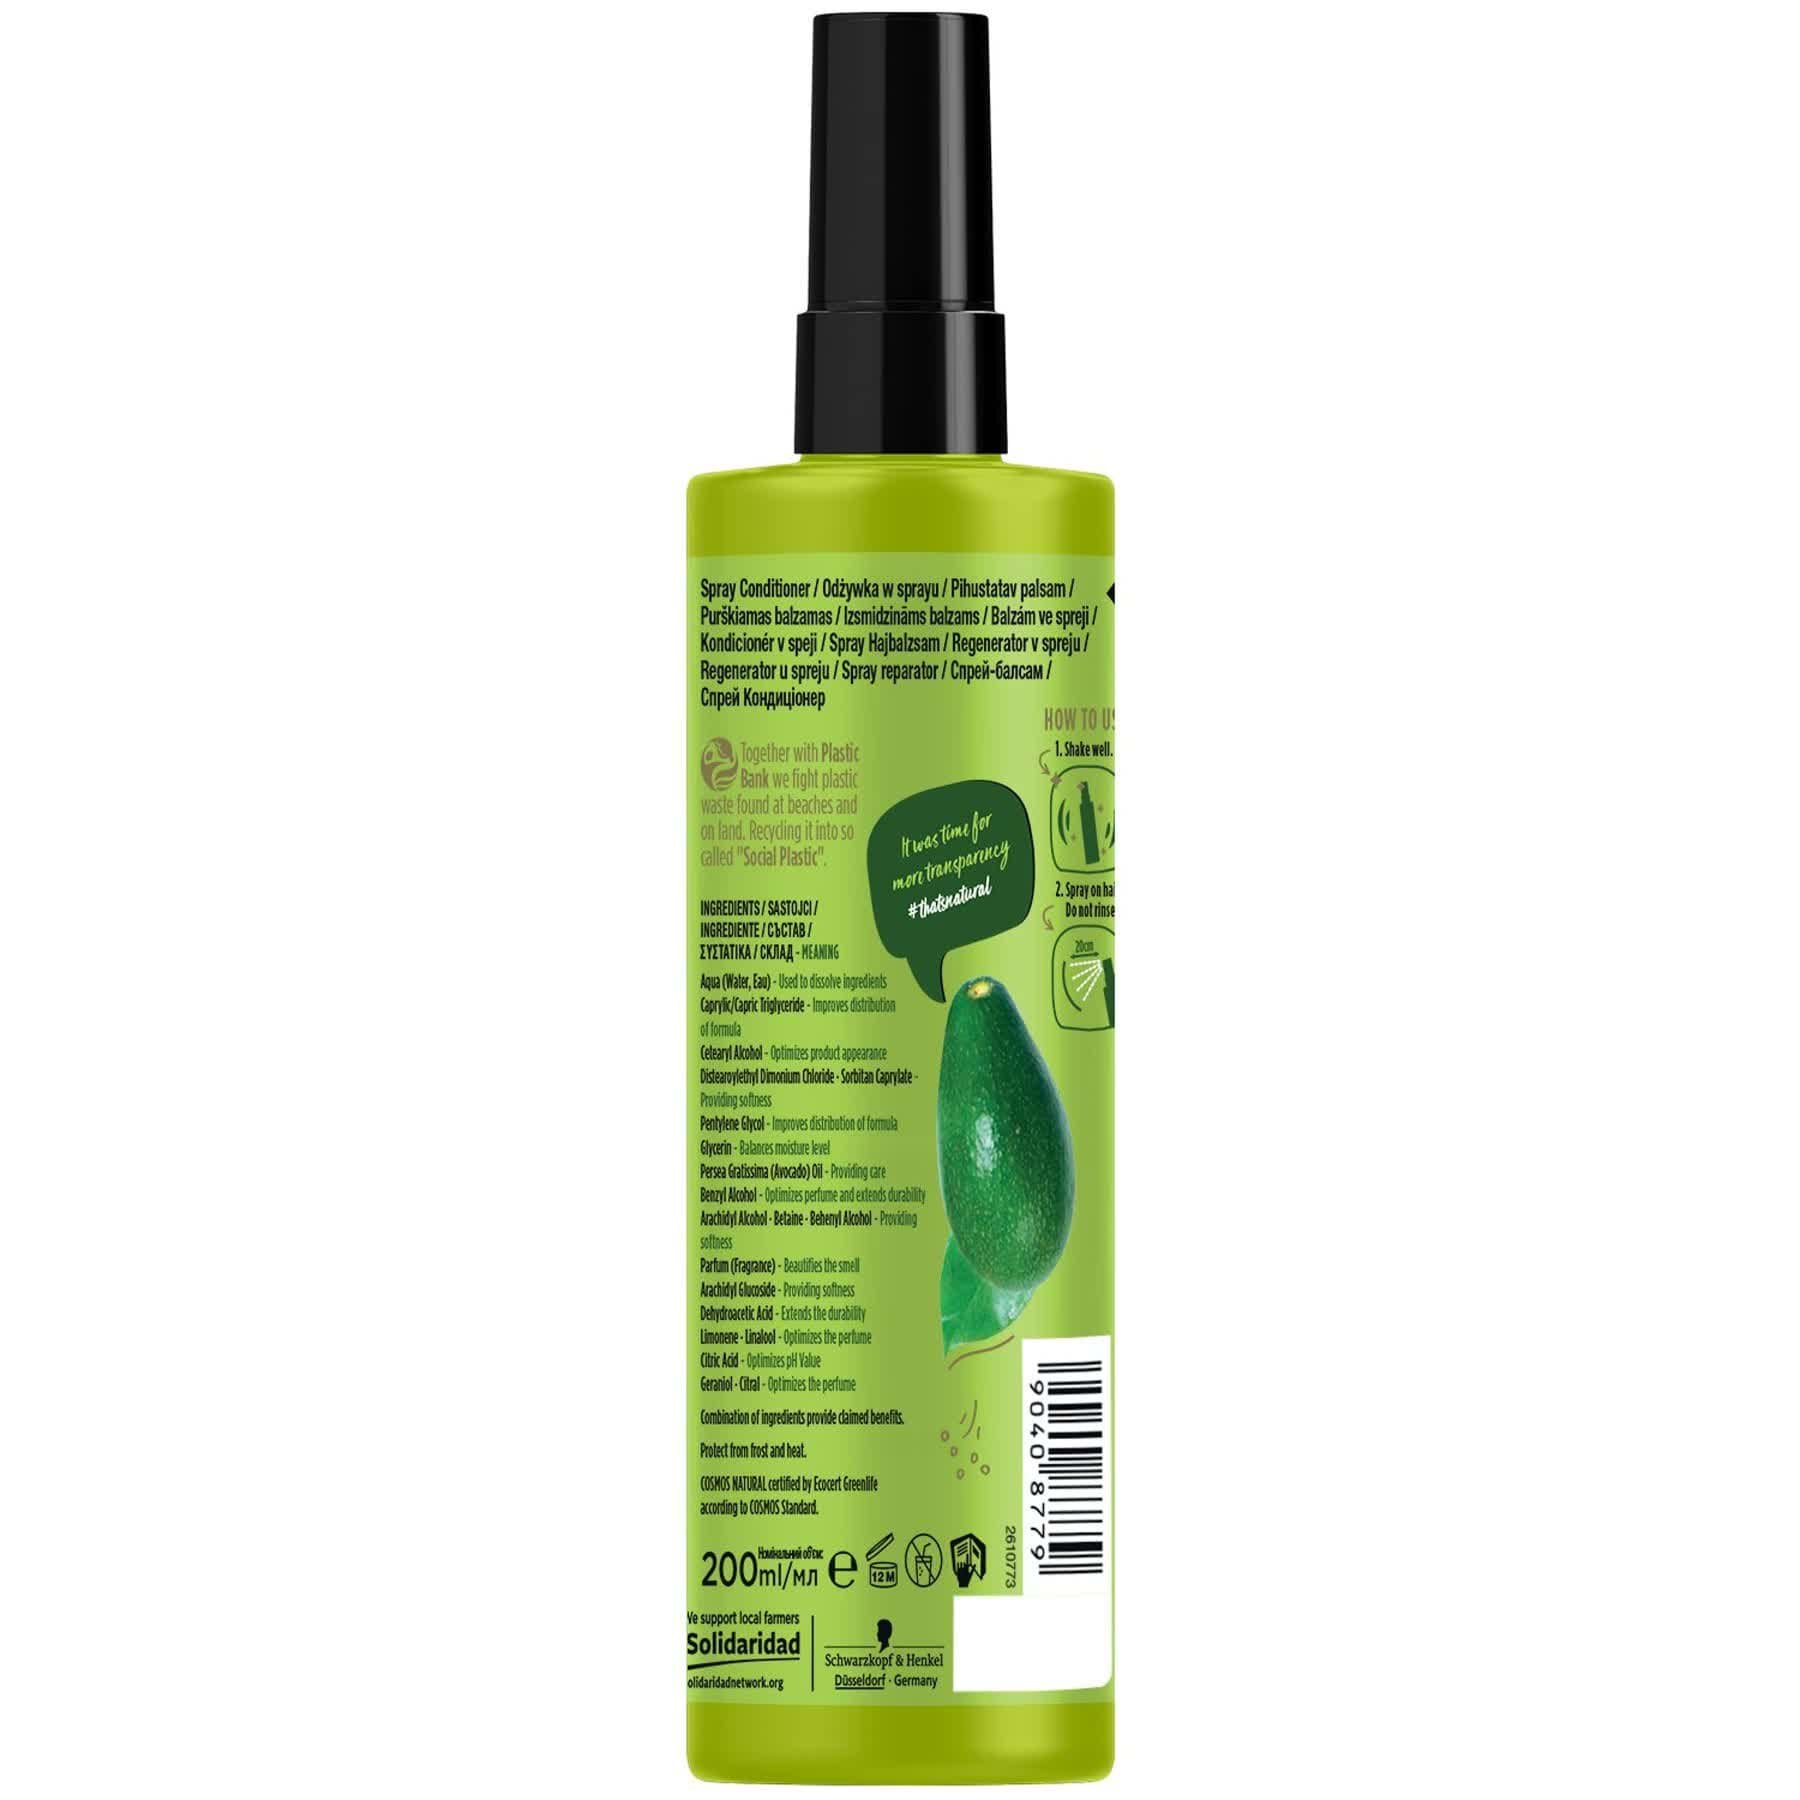 Експрес-кондиціонер Nature Box для відновлення волосся та проти посічених кінчиків з олією авокадо холодного віджиму 200 мл